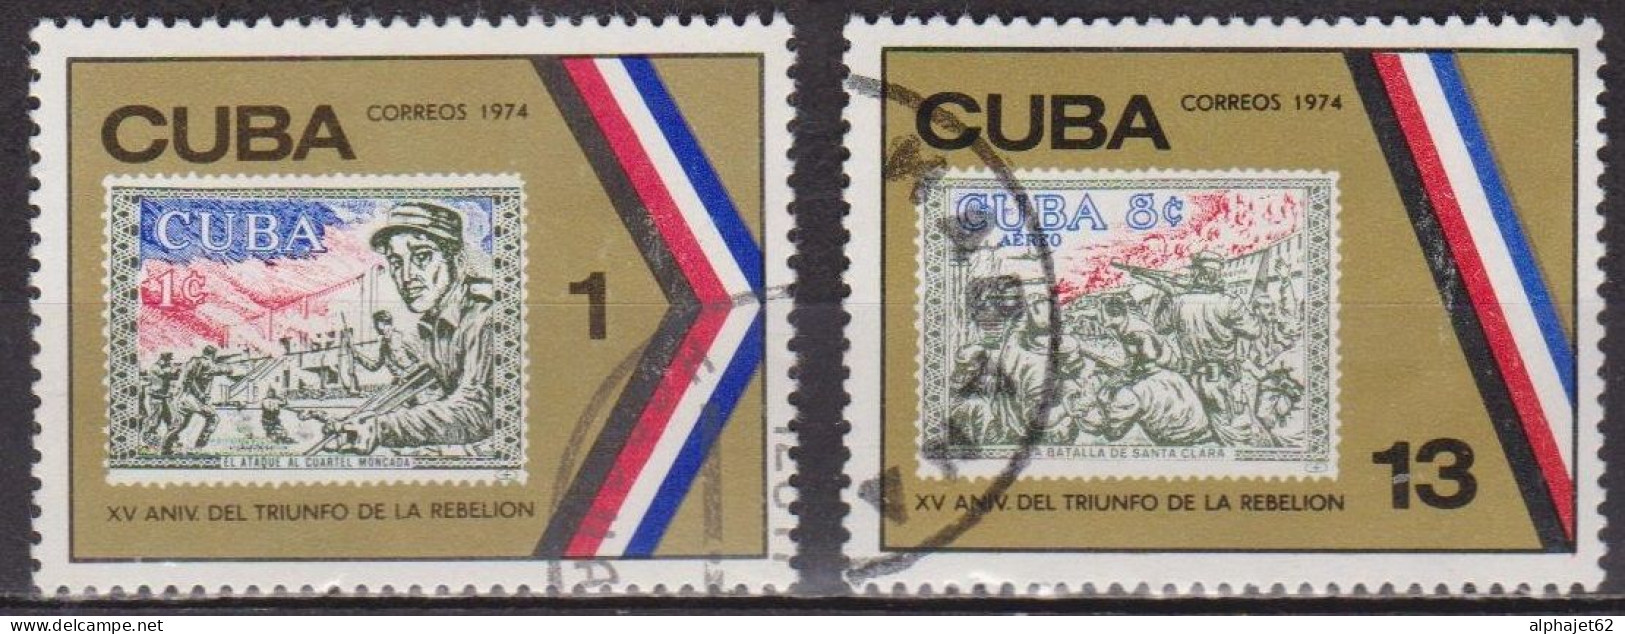 Révolution - CUBA - Timbres Sur Timbres - N° 1729-1731 - 1974 - Gebraucht